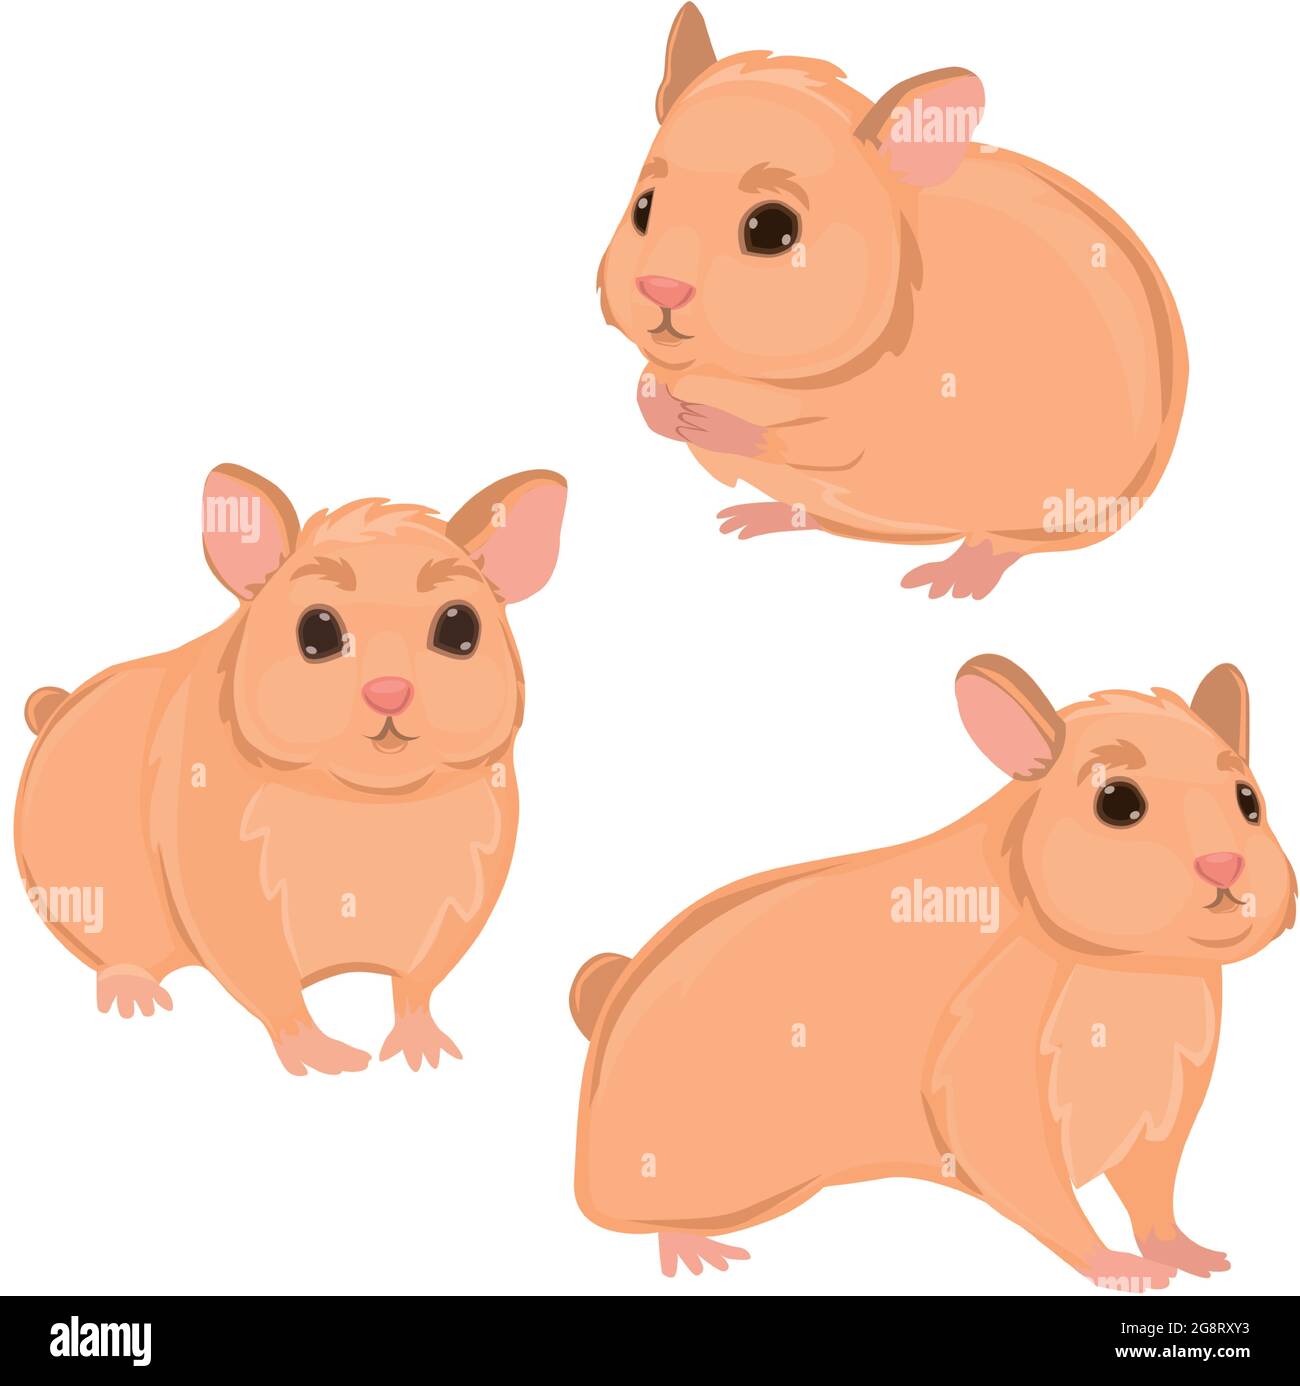 Drei realistische Hamster auf weißem Hintergrund - Vektor-Illustration Stock Vektor